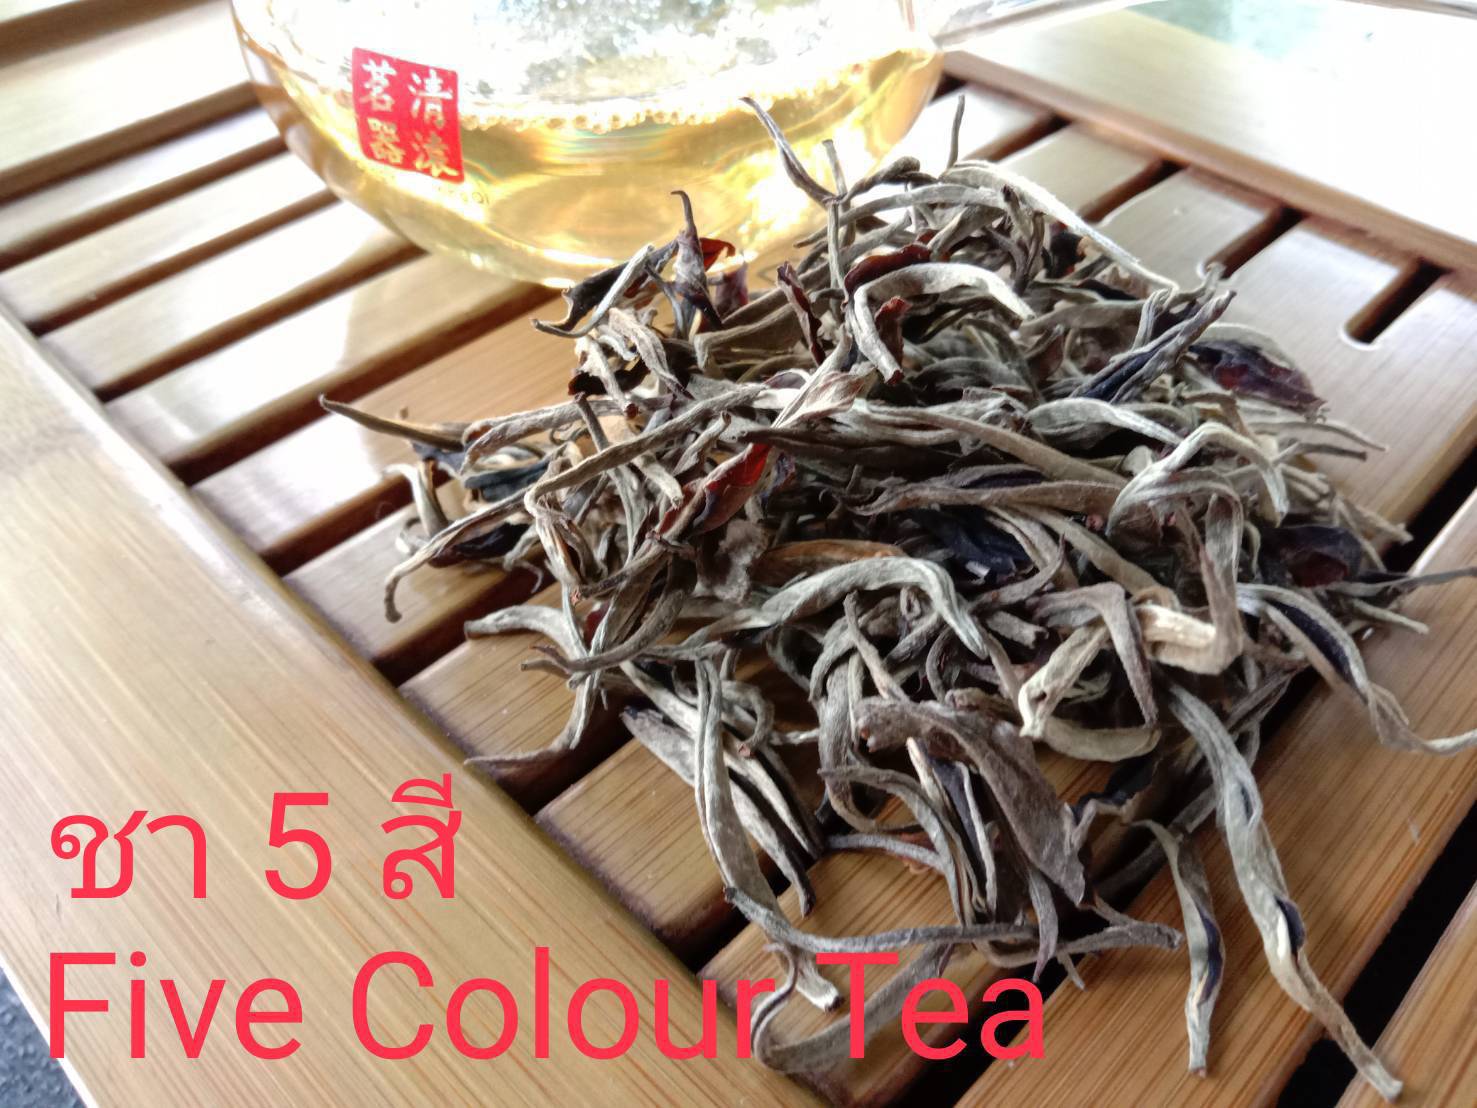 ชา 5 สี ชาอัสสัมออร์แกนิค (ตราดอยปู่หมื่น) 1 กก. Organic Assam Five Color Tea (Doi Pumuen Brand) 1 kg.